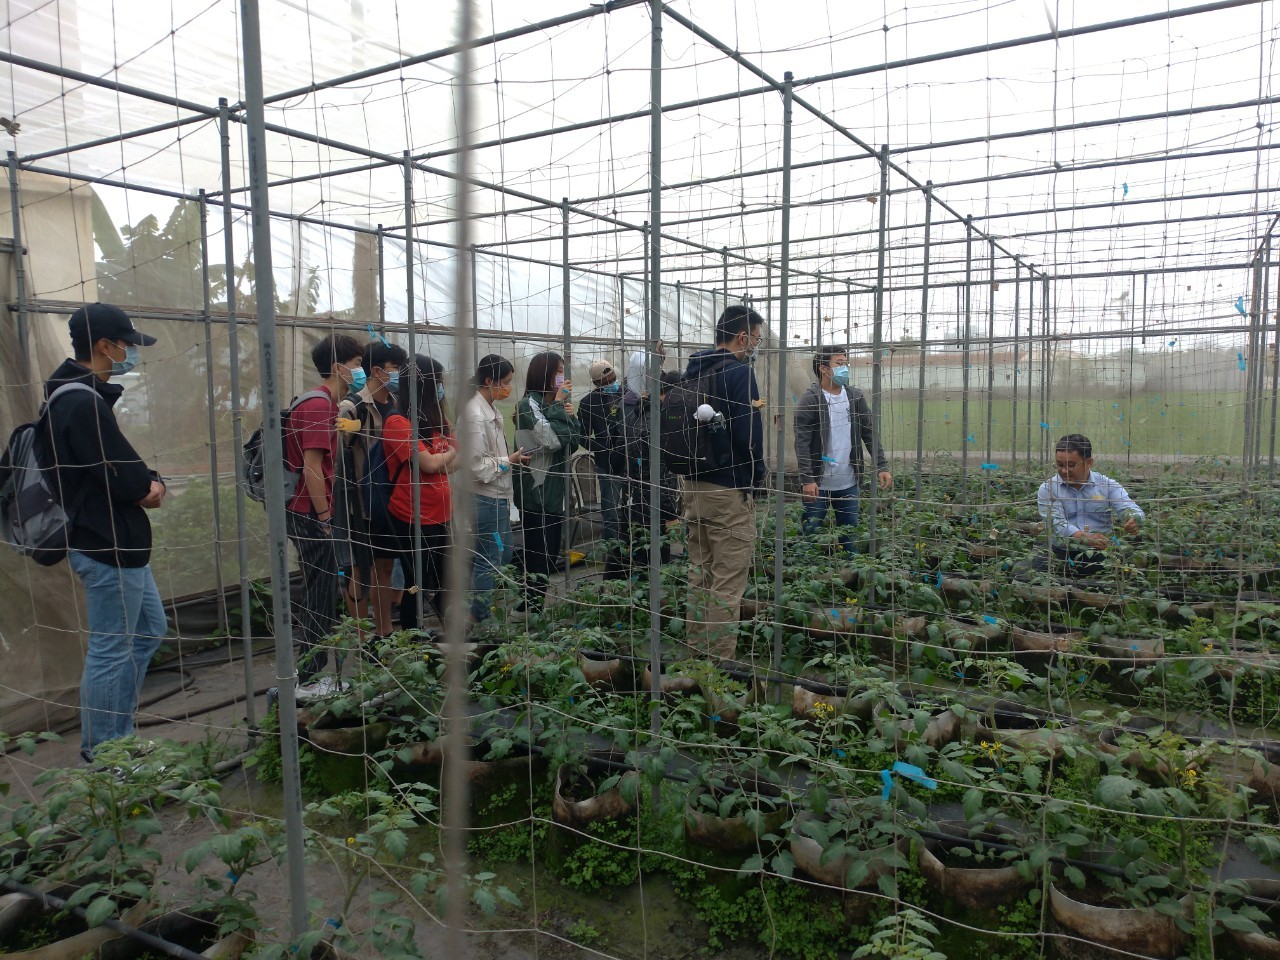 興大農推中心與農服團合作 外籍生體驗台灣多元農業文化